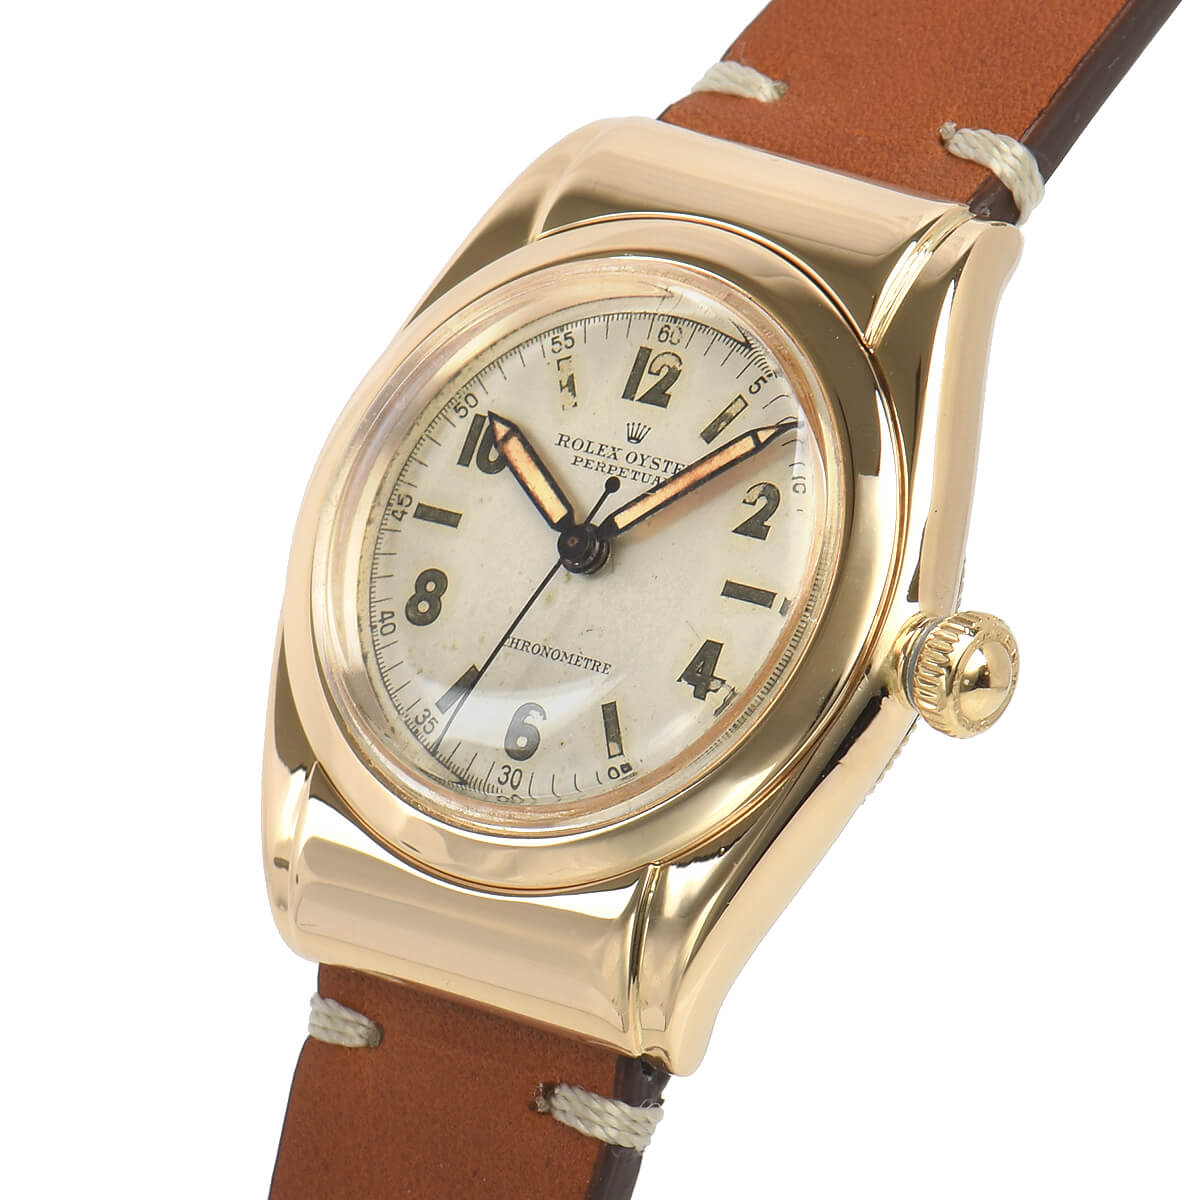 楽天市場 ロレックス Rolex バブルバック フーデッド 3065 中古 メンズ 腕時計 送料無料 宝石広場